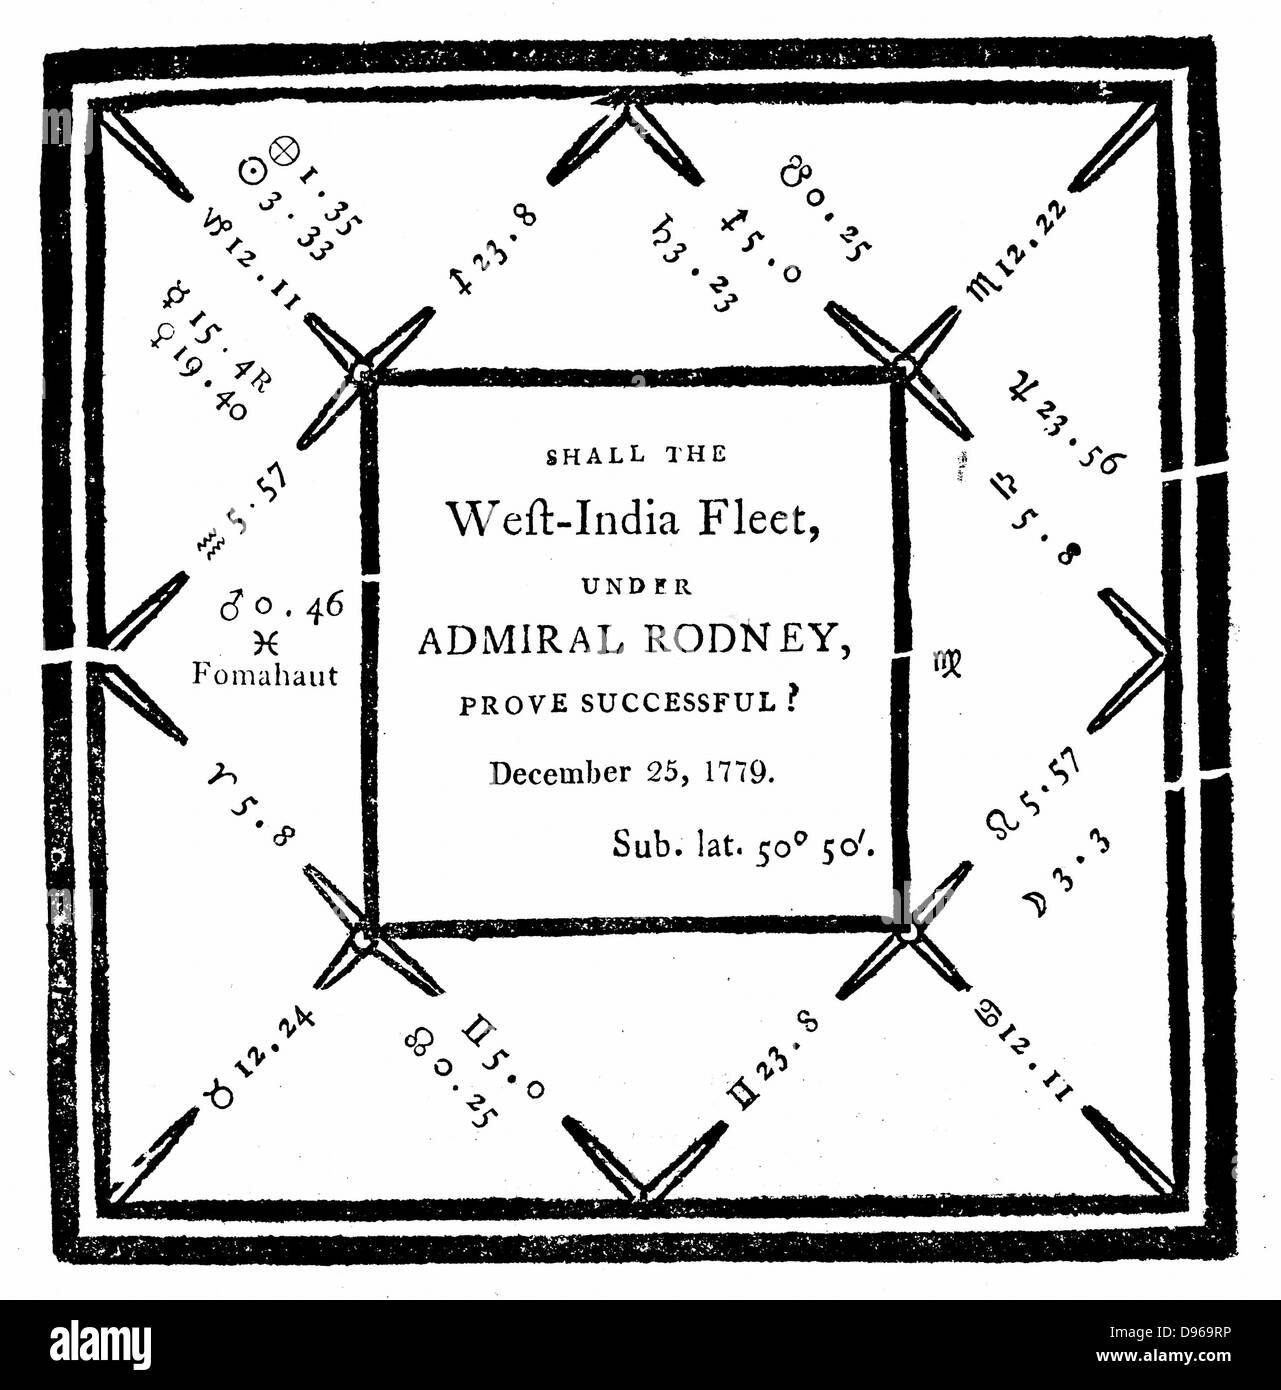 Oroscopo redatto da E Sibly nel 1779 su richiesta di 'some naval gentlemen' per prevedere che la British West Indies flotta in Admiral Rodney sarebbe vittoriosa. Foto Stock